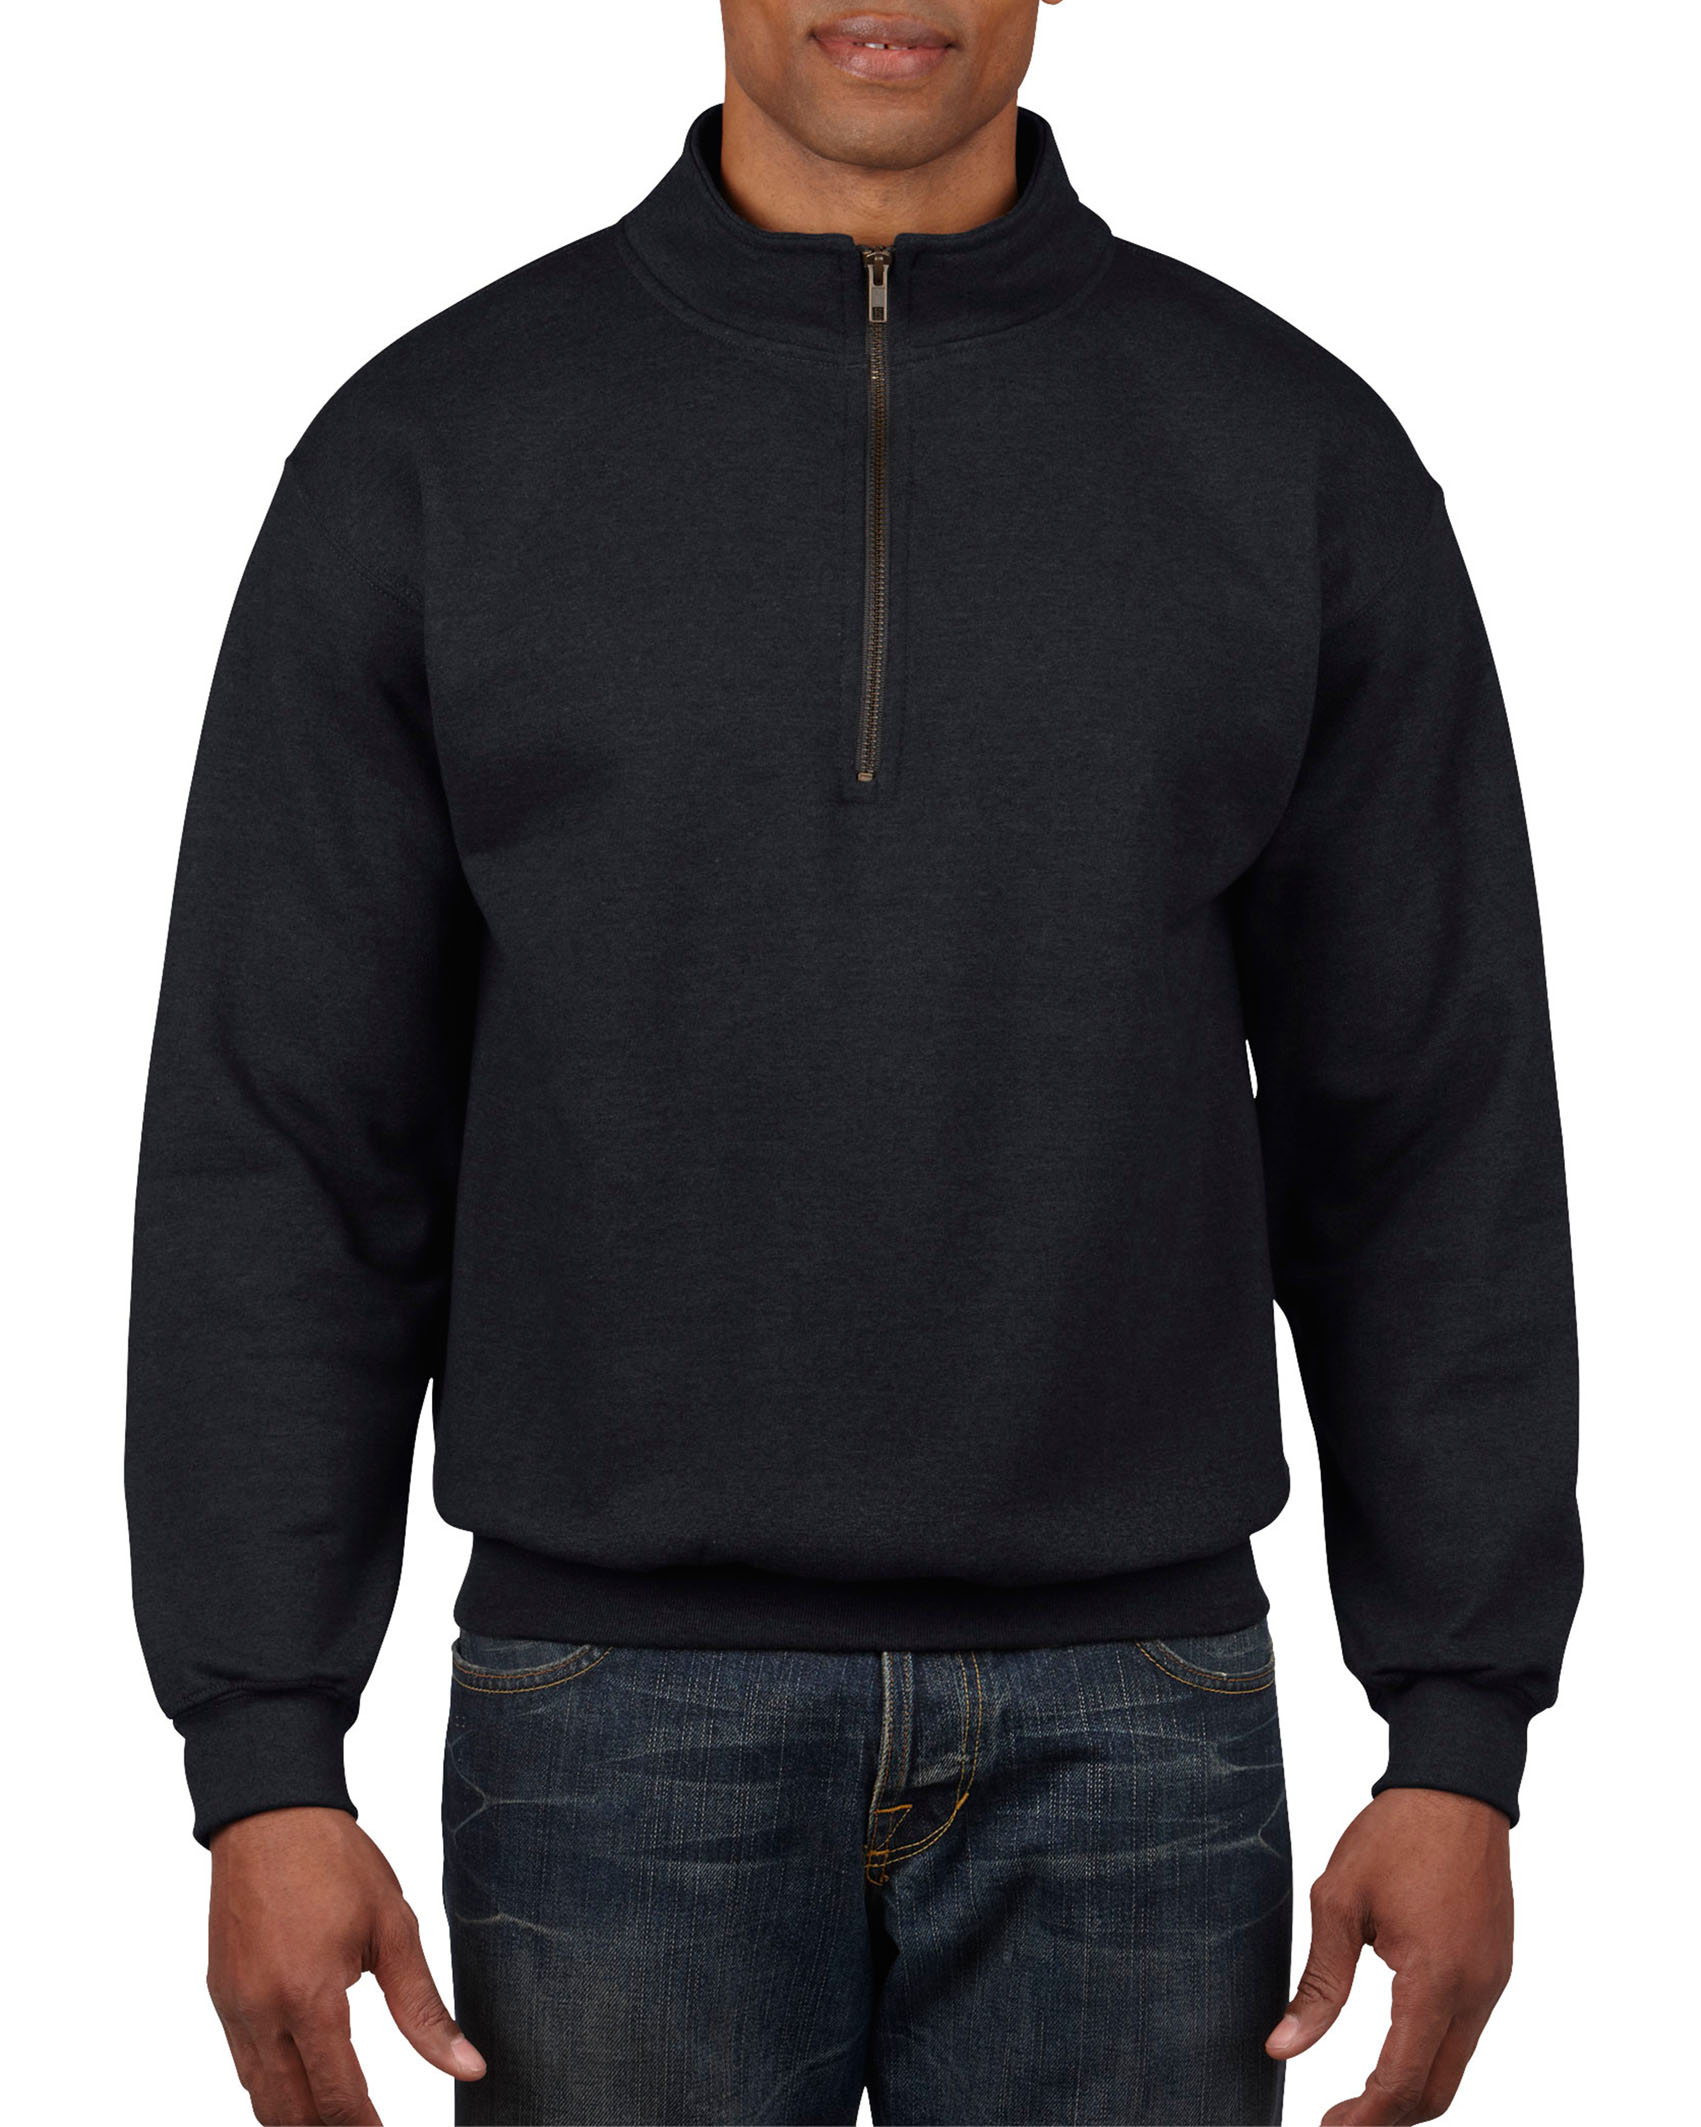 Gildan Sweater 1/4 Zip HeavyBlend